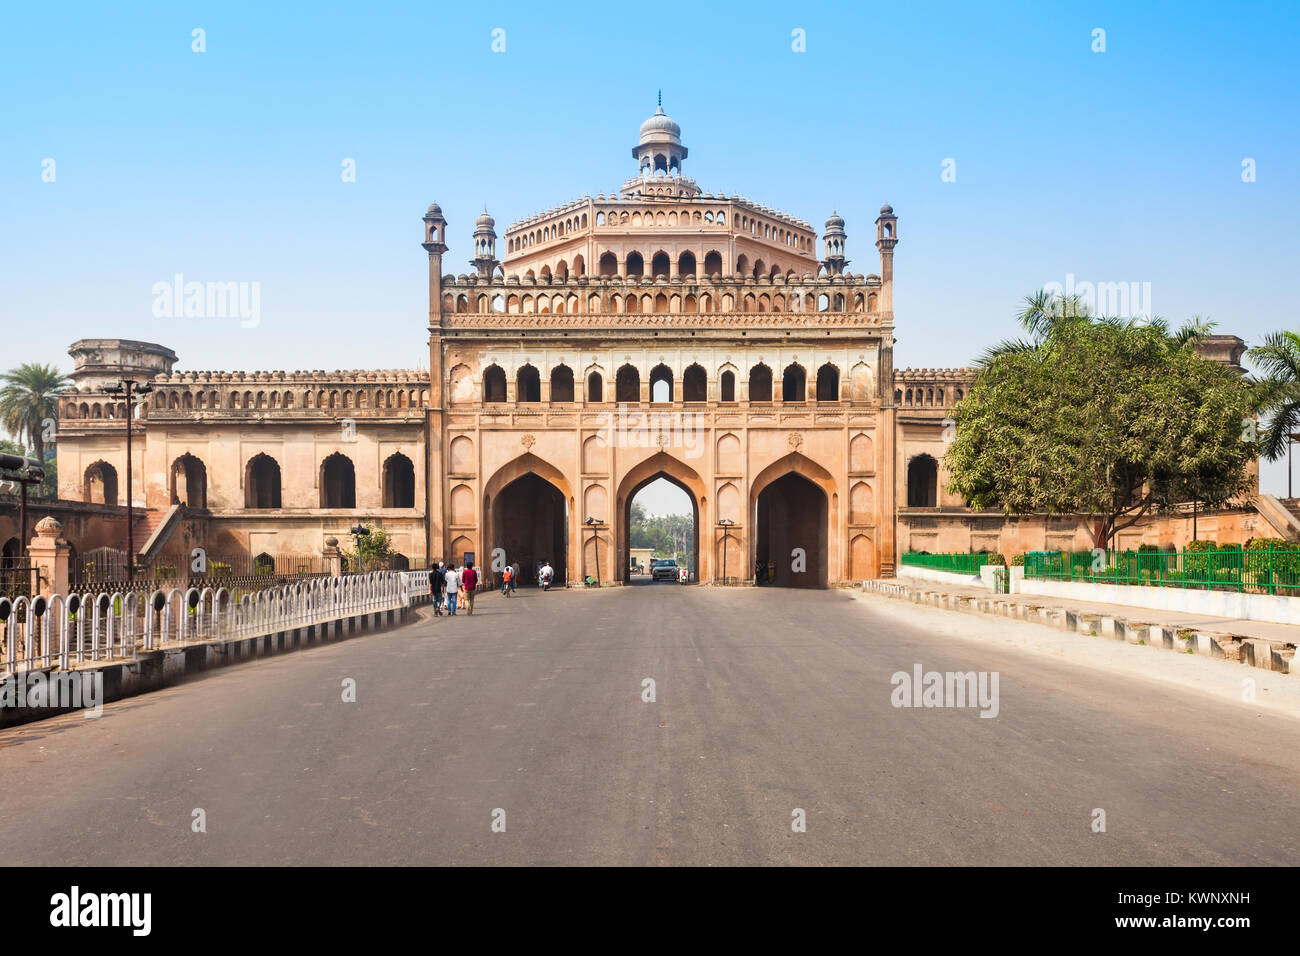 La Rumi Darwaza (Turco Gate) nella città di Lucknow, nello stato di Uttar Pradesh dell India è un imponente gateway. È un esempio di architettura Awadhi. Foto Stock